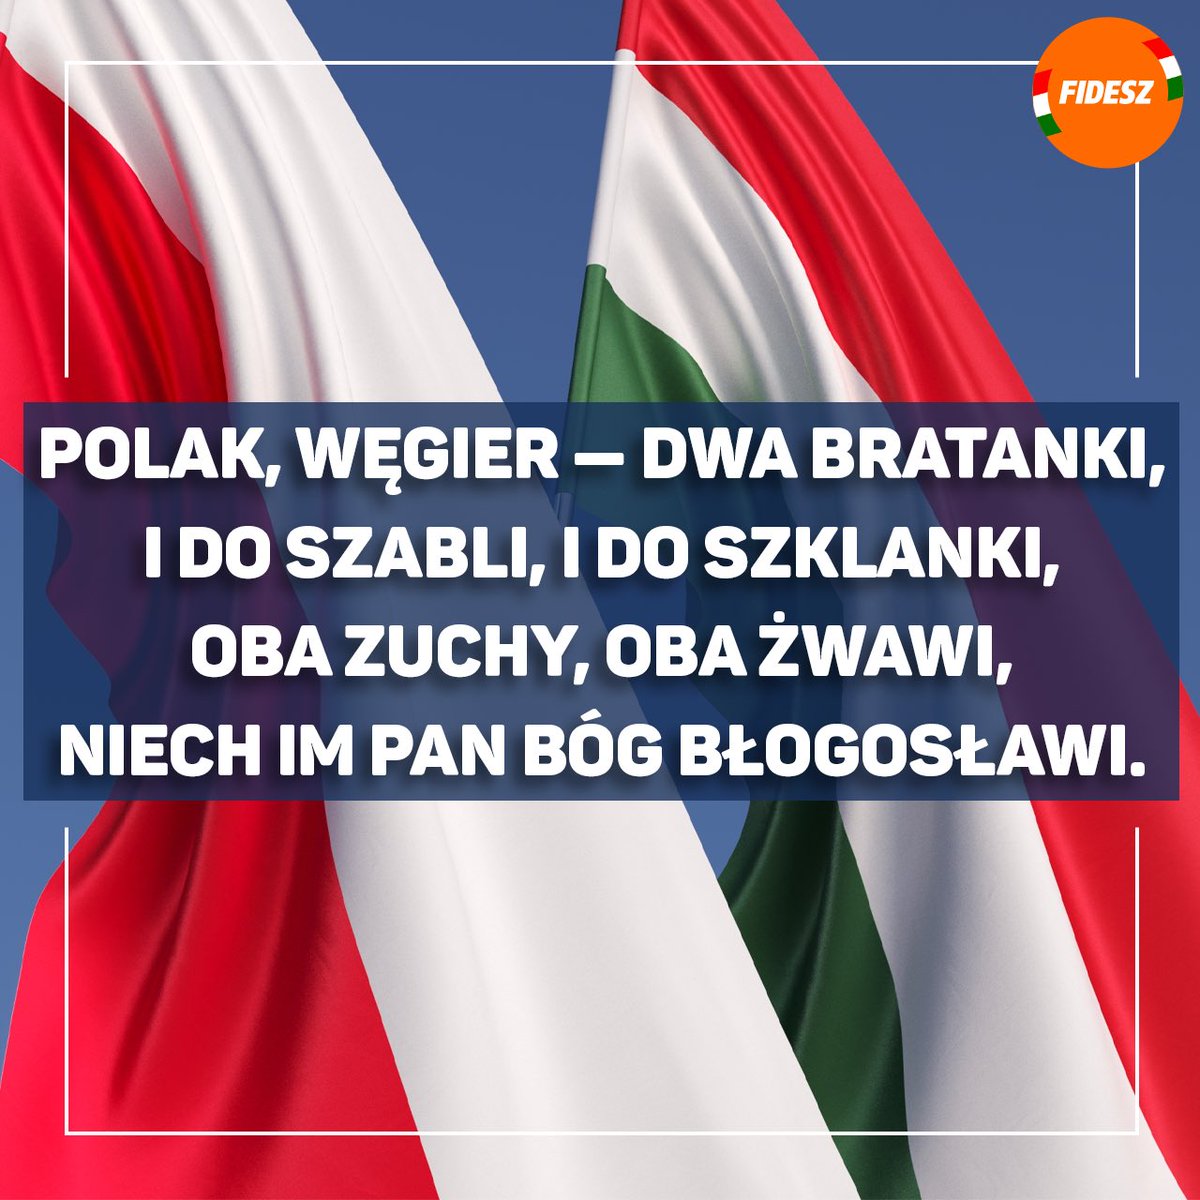 🇵🇱🤝🇭🇺 Long live the Polish-Hungarian friendship! 🇵🇱🤝🇭🇺 Niech żyje przyjaźń polsko-węgierska! #Poland #Hungary